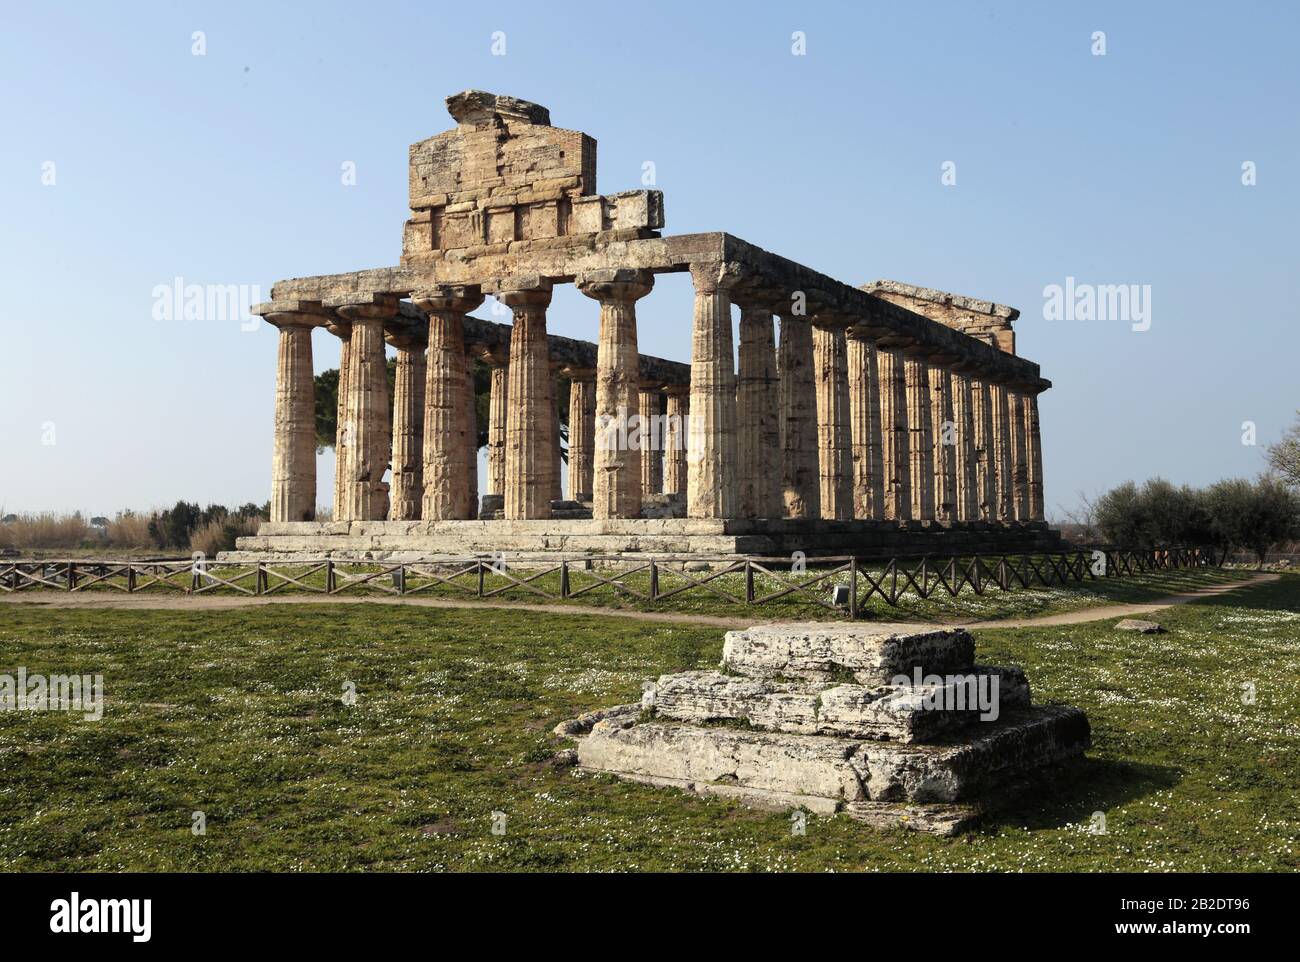 Il tempio di Atena (cosiddetto tempio di Cerere). C. 500 A.C. Ordine dorico. Sito archeologico di Paestum, Campania, Italia. Foto Stock